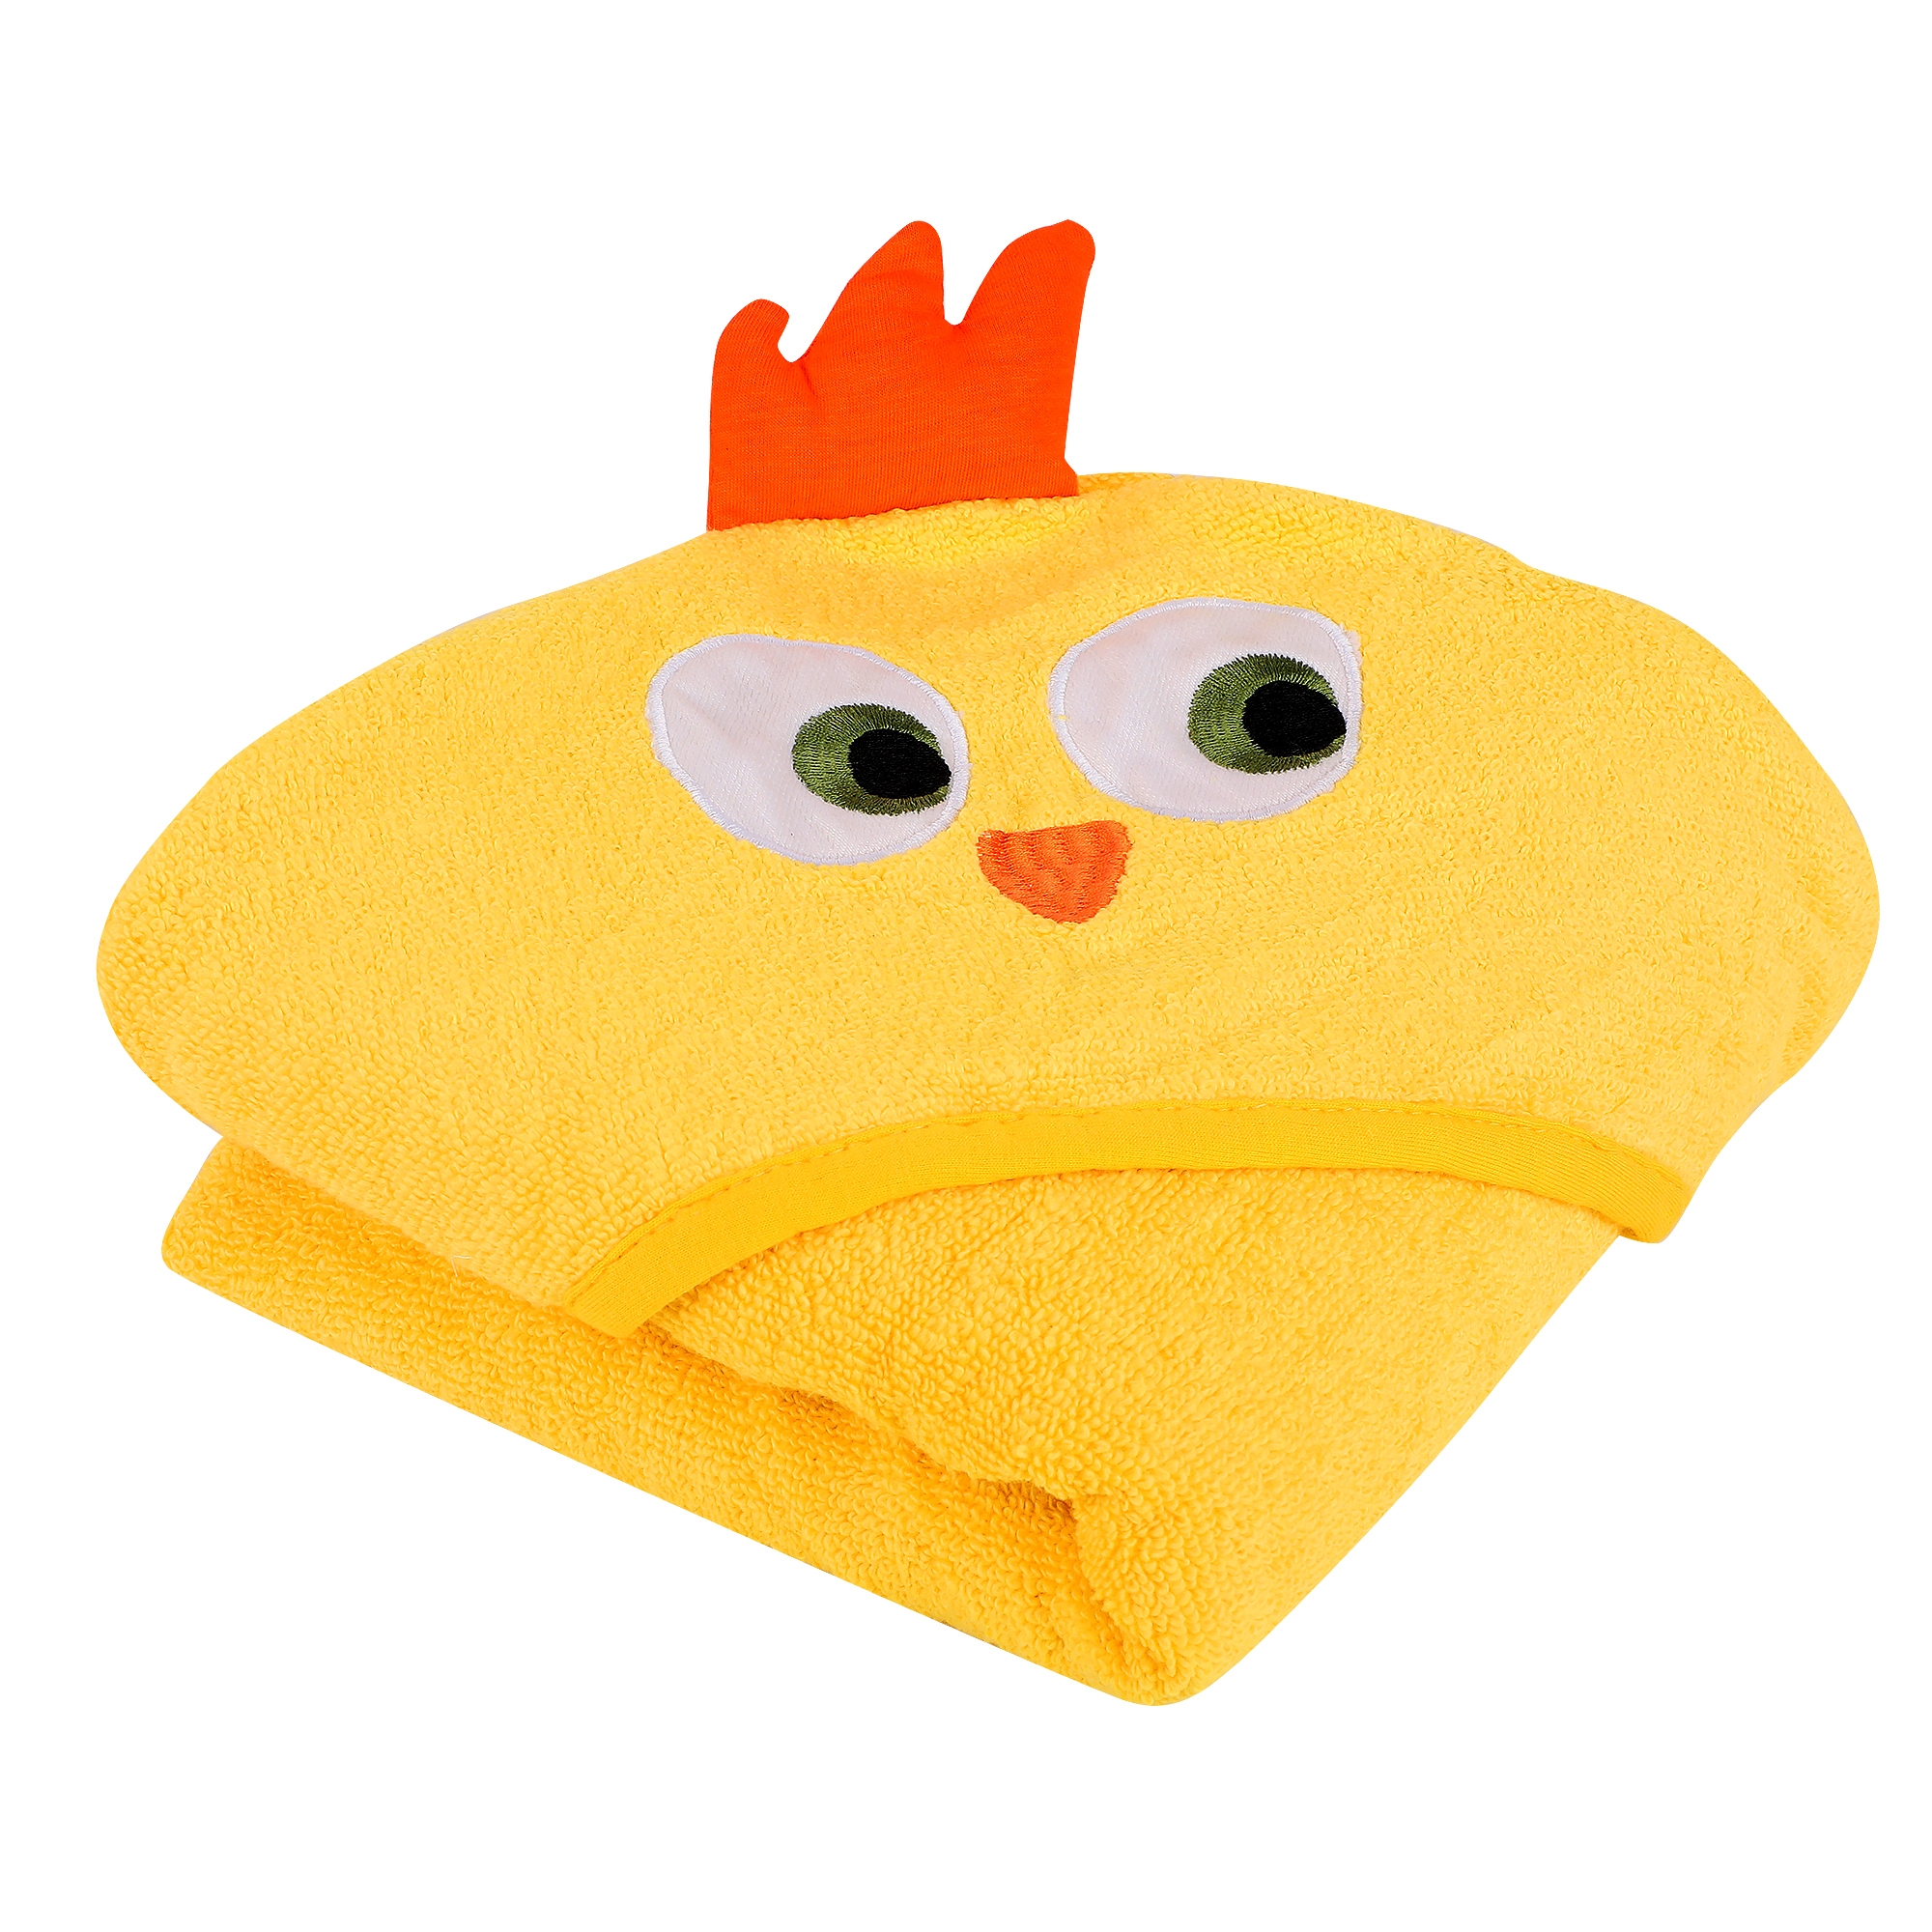 Kidbea | Kidbea Yellow Hooded Towel